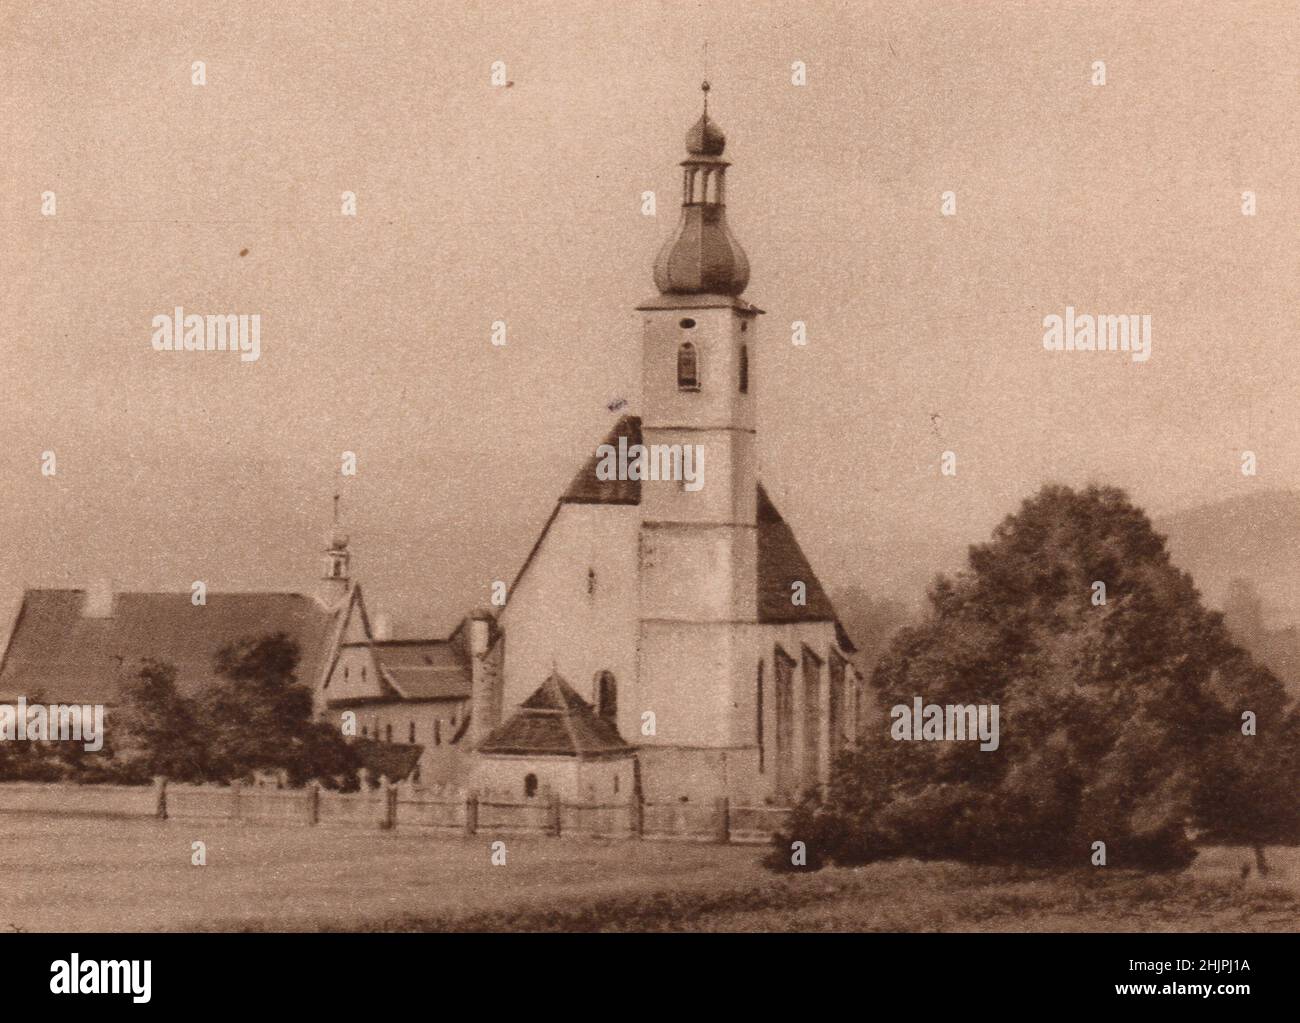 Im eineinigen Hochland des Böhmerwaldes liegen abgeschiedenen Dörfer, die viele interessante alte Merkmale und Assoziationen behalten. Tschechien (1923) Stockfoto